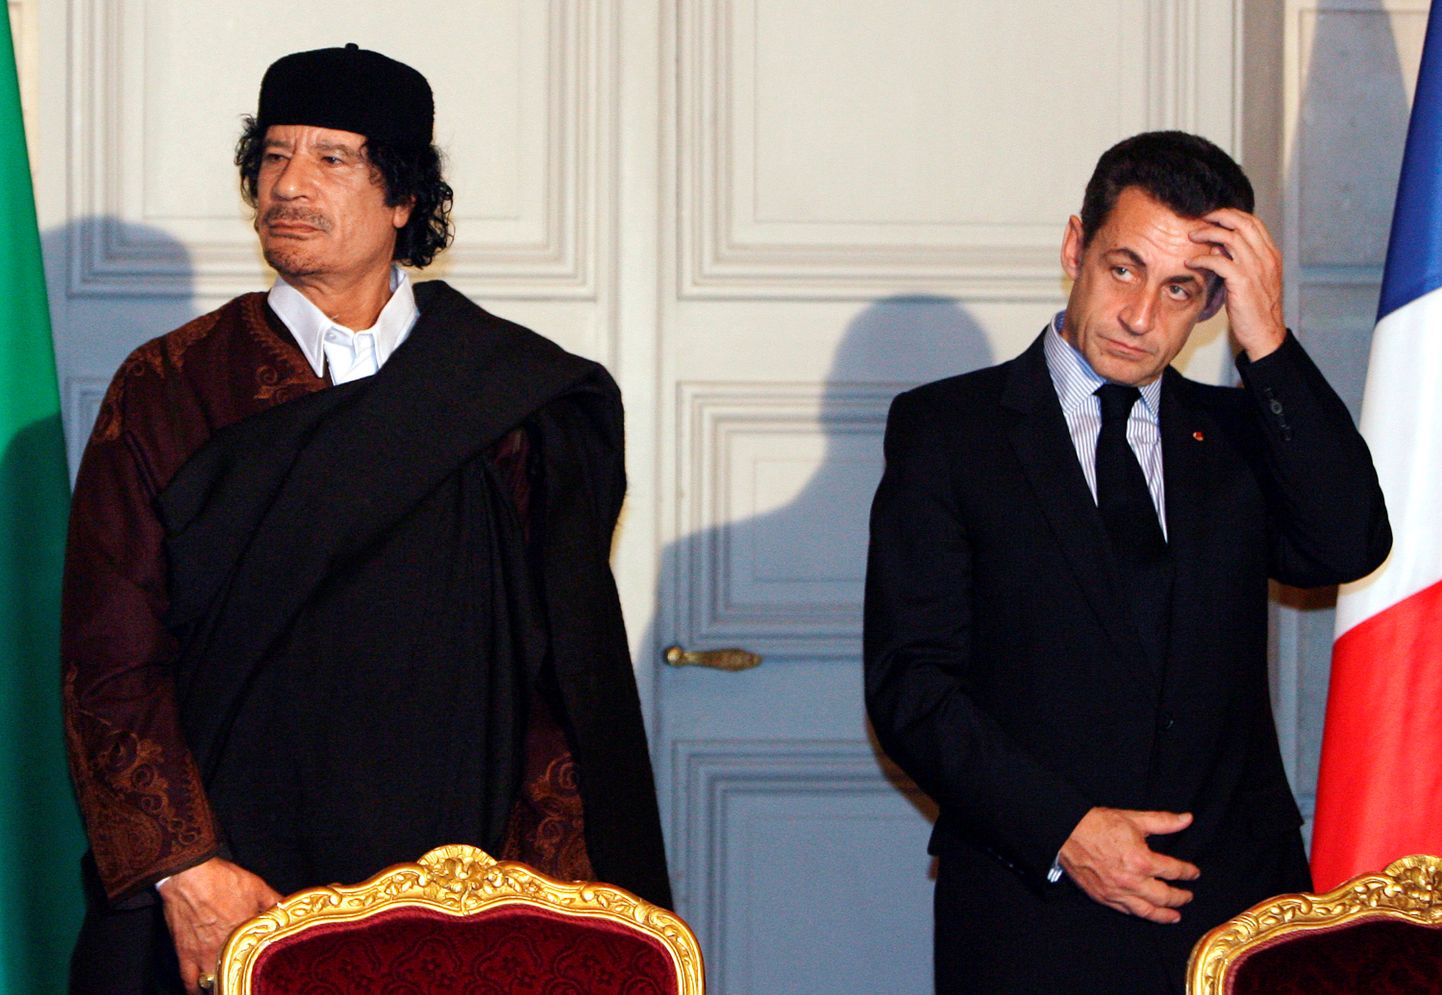 Liibüa diktaator Muammar Gaddafi ja Prantsuse president Nicolas Sarkozy 2007. aastal kohtumisel Pariisis.